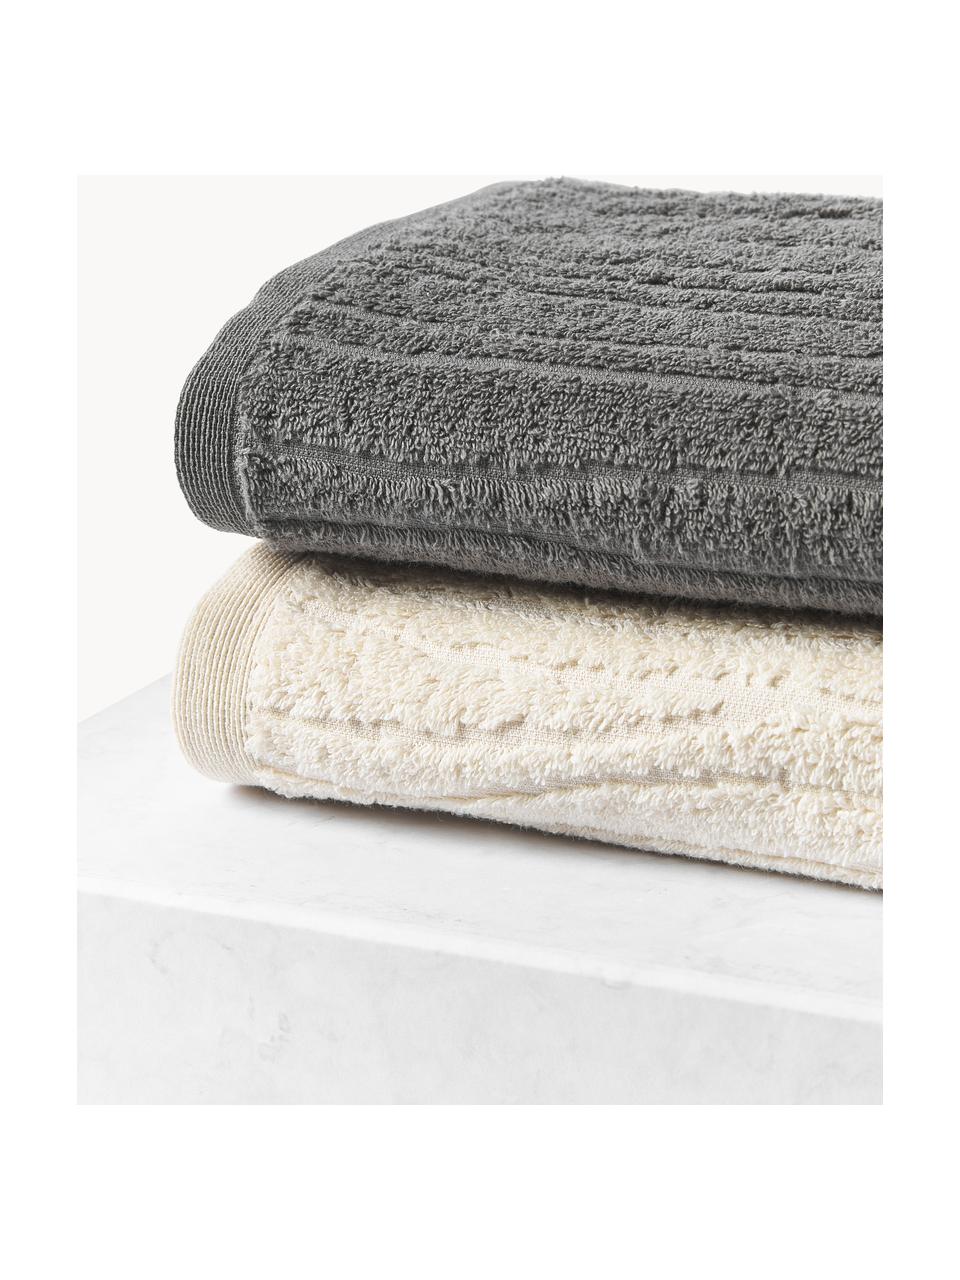 Sada ručníků z bavlny Audrina, různé velikosti sady, Tmavě šedá, Sada s různými velikostmi